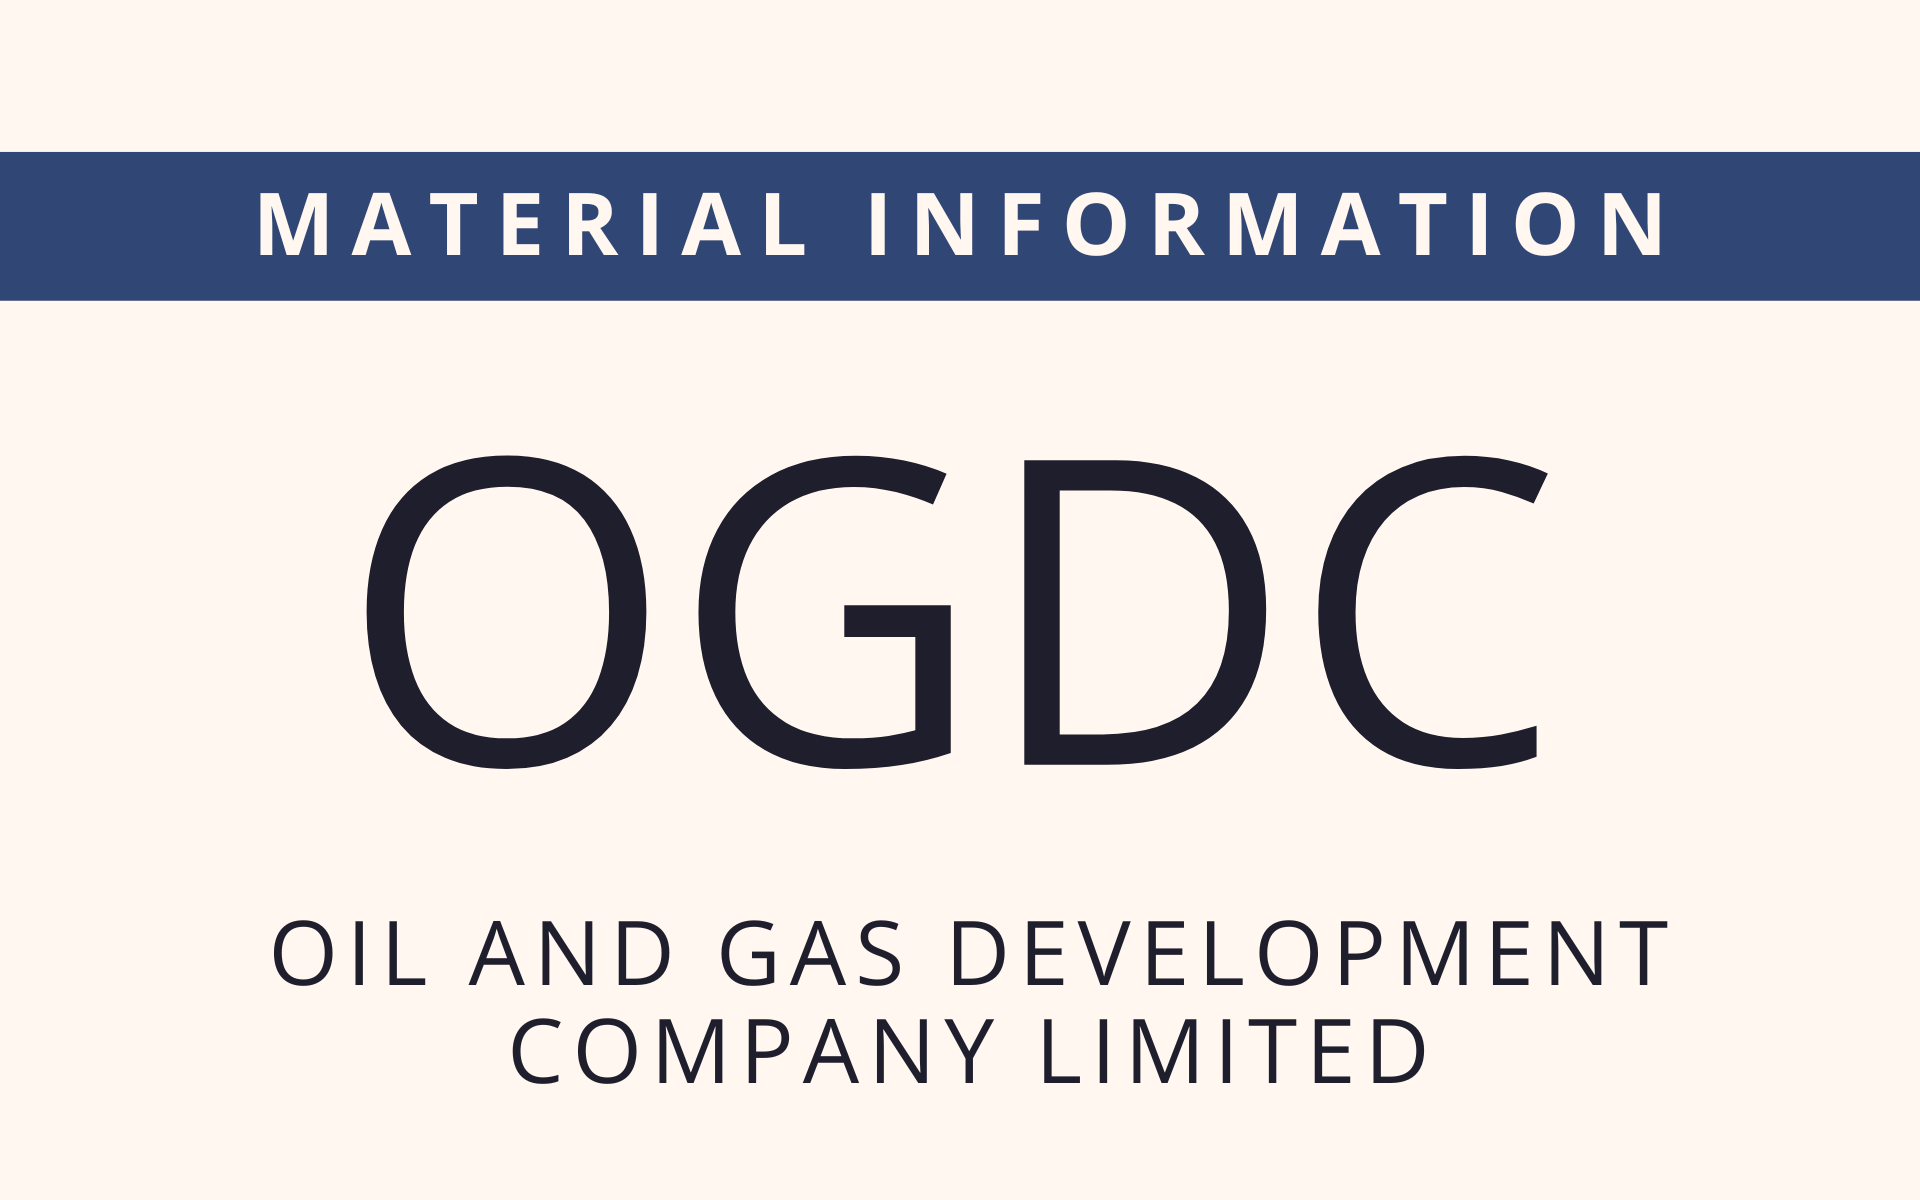 OGDC - Material Information